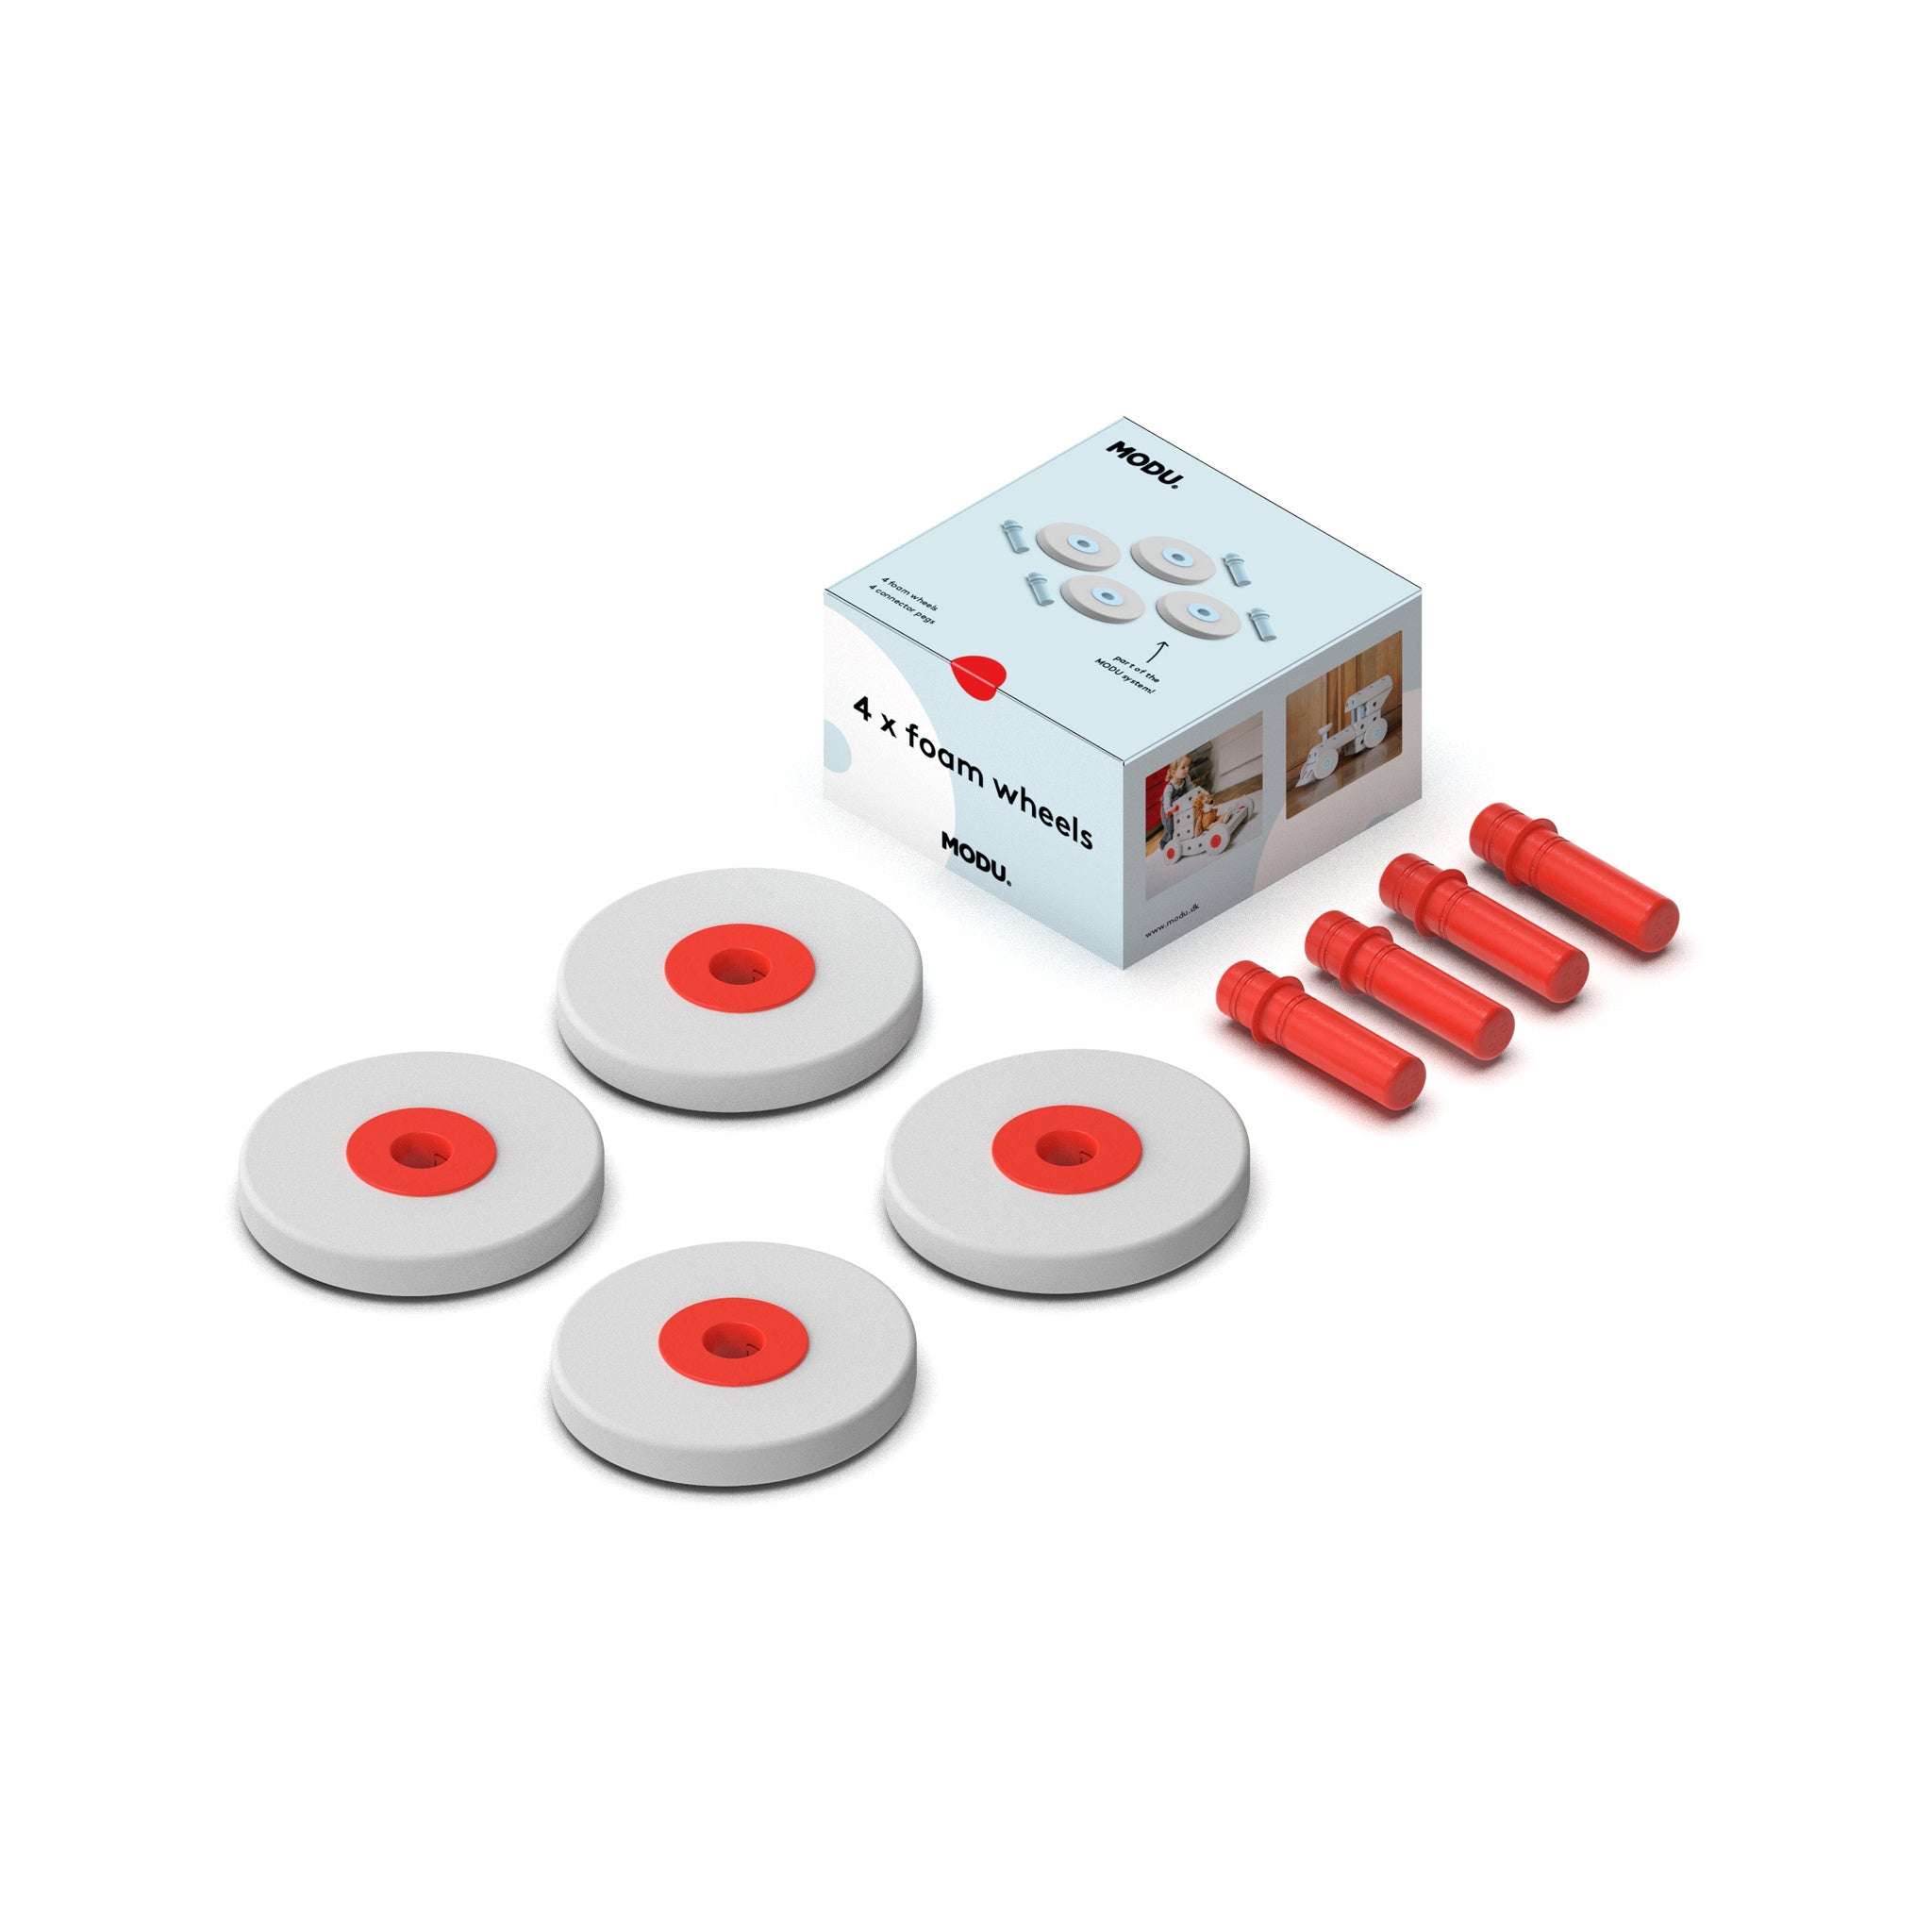 Module - a set of 4 foam wheels, red